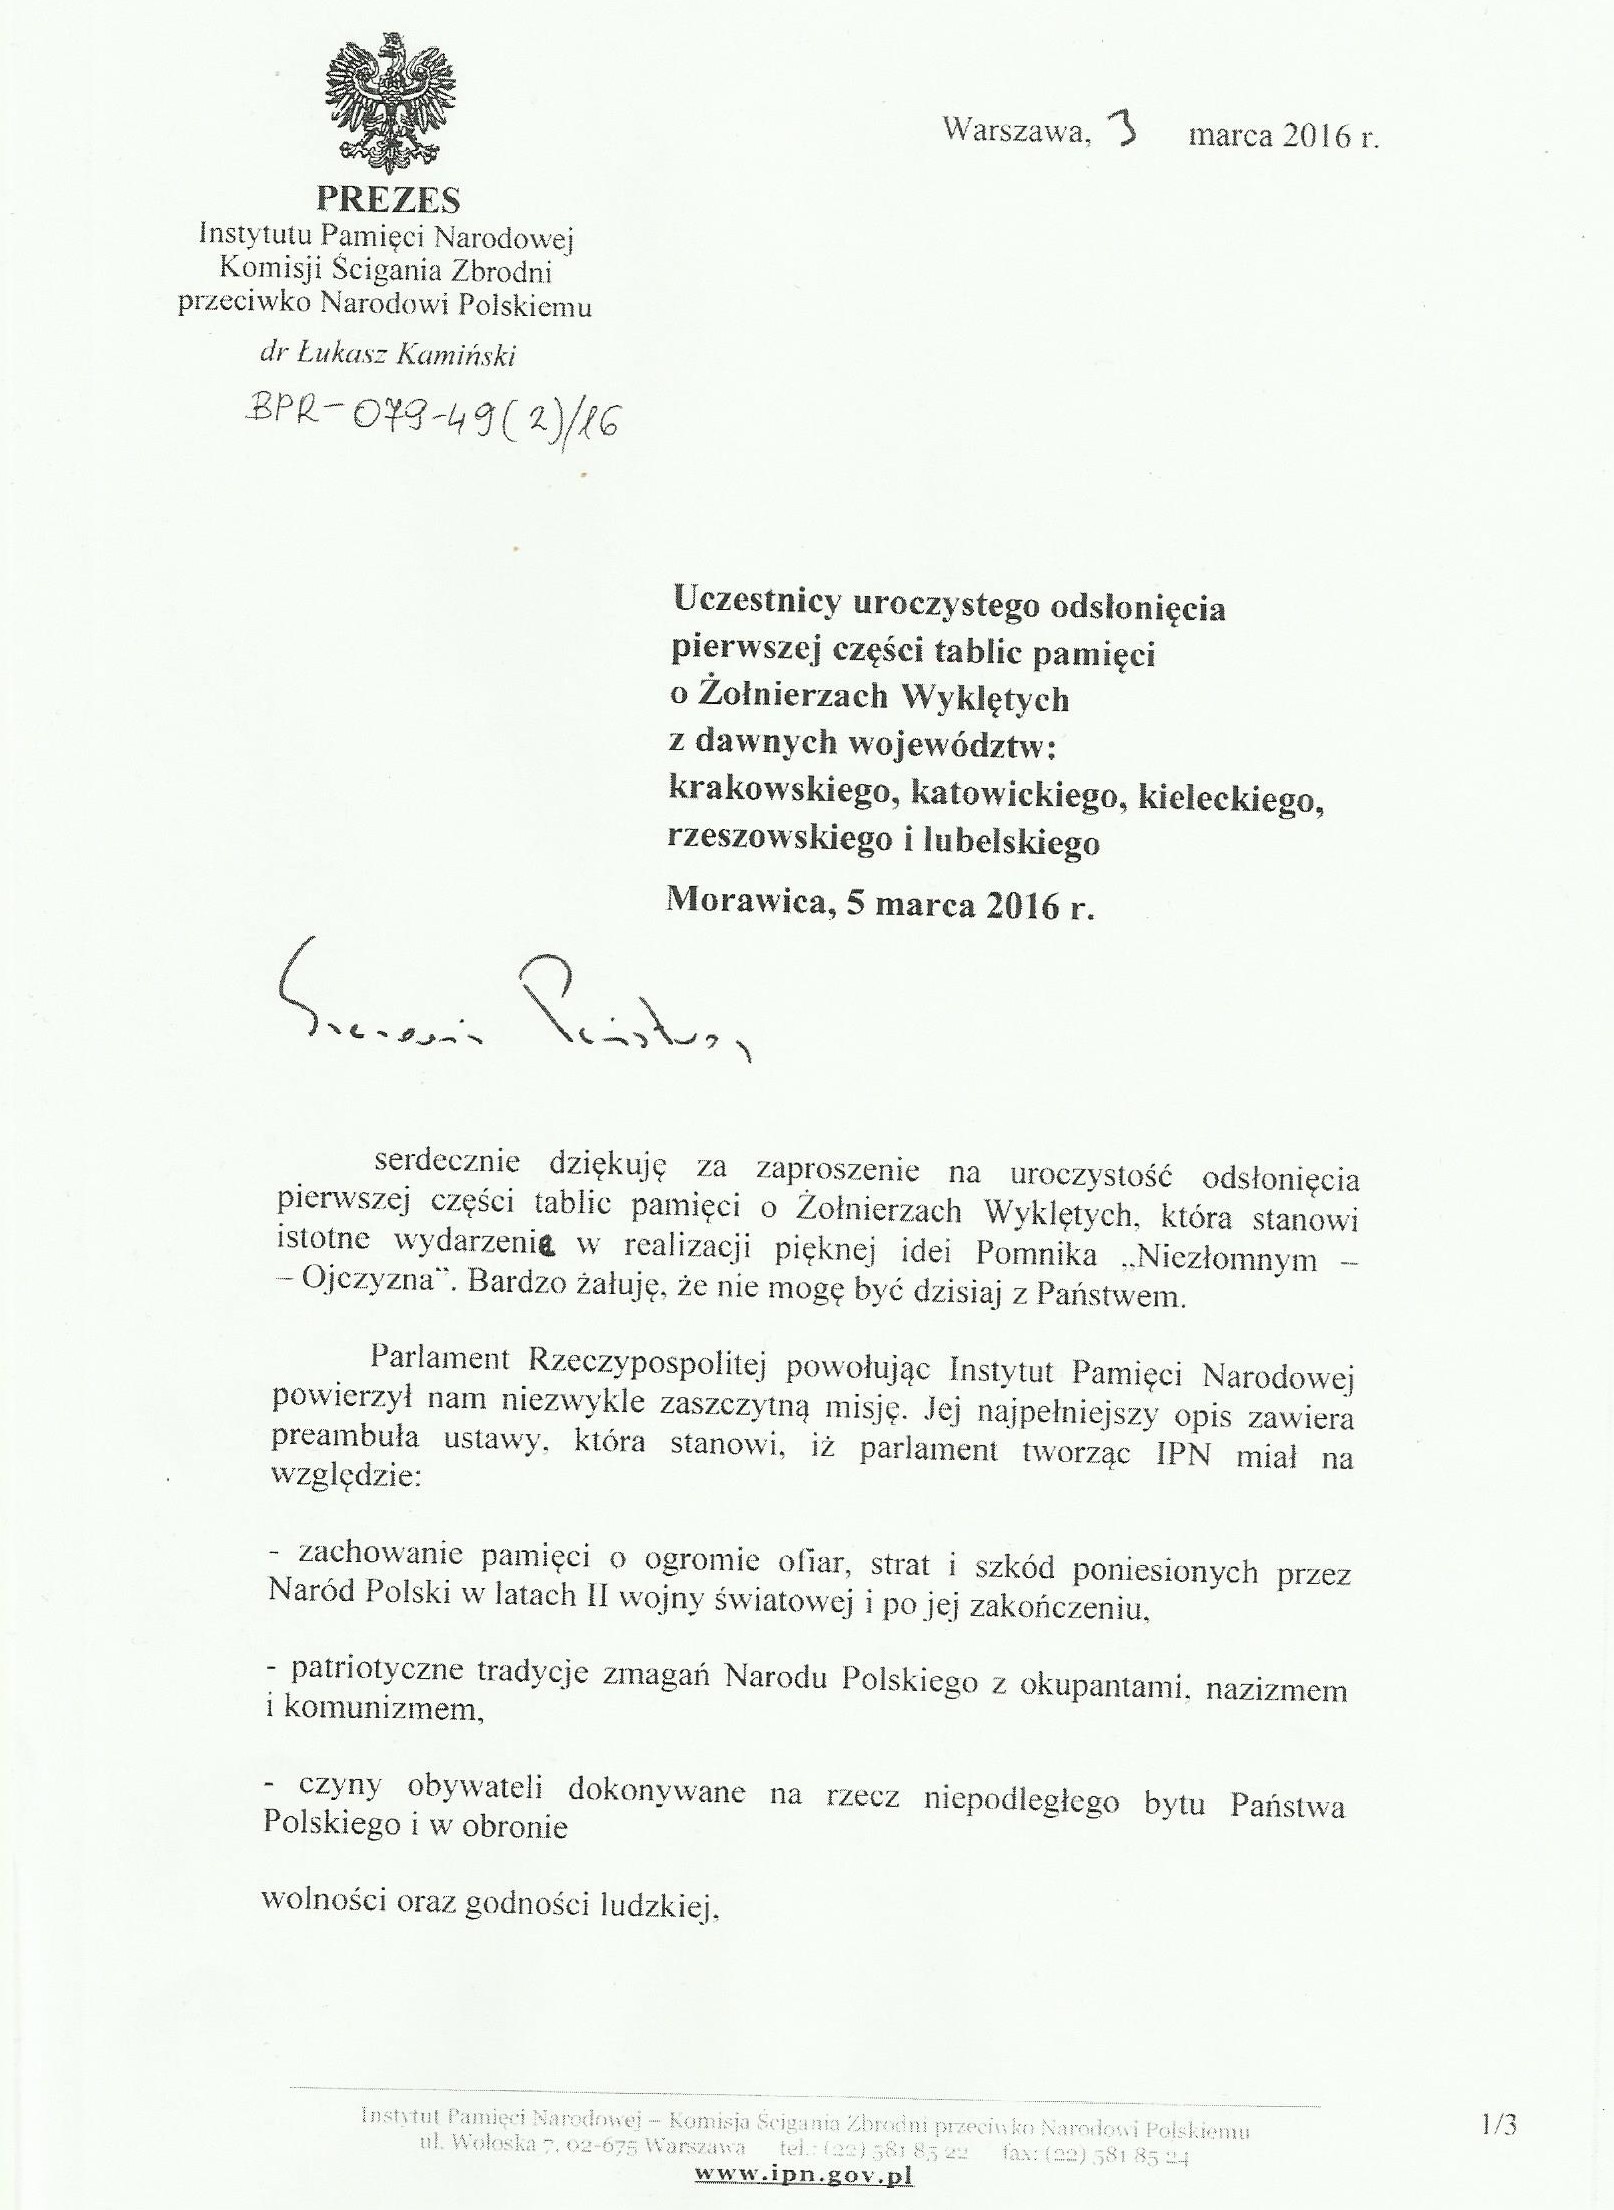 List Prezesa IPN dr Łukasza Kamińskiego 001